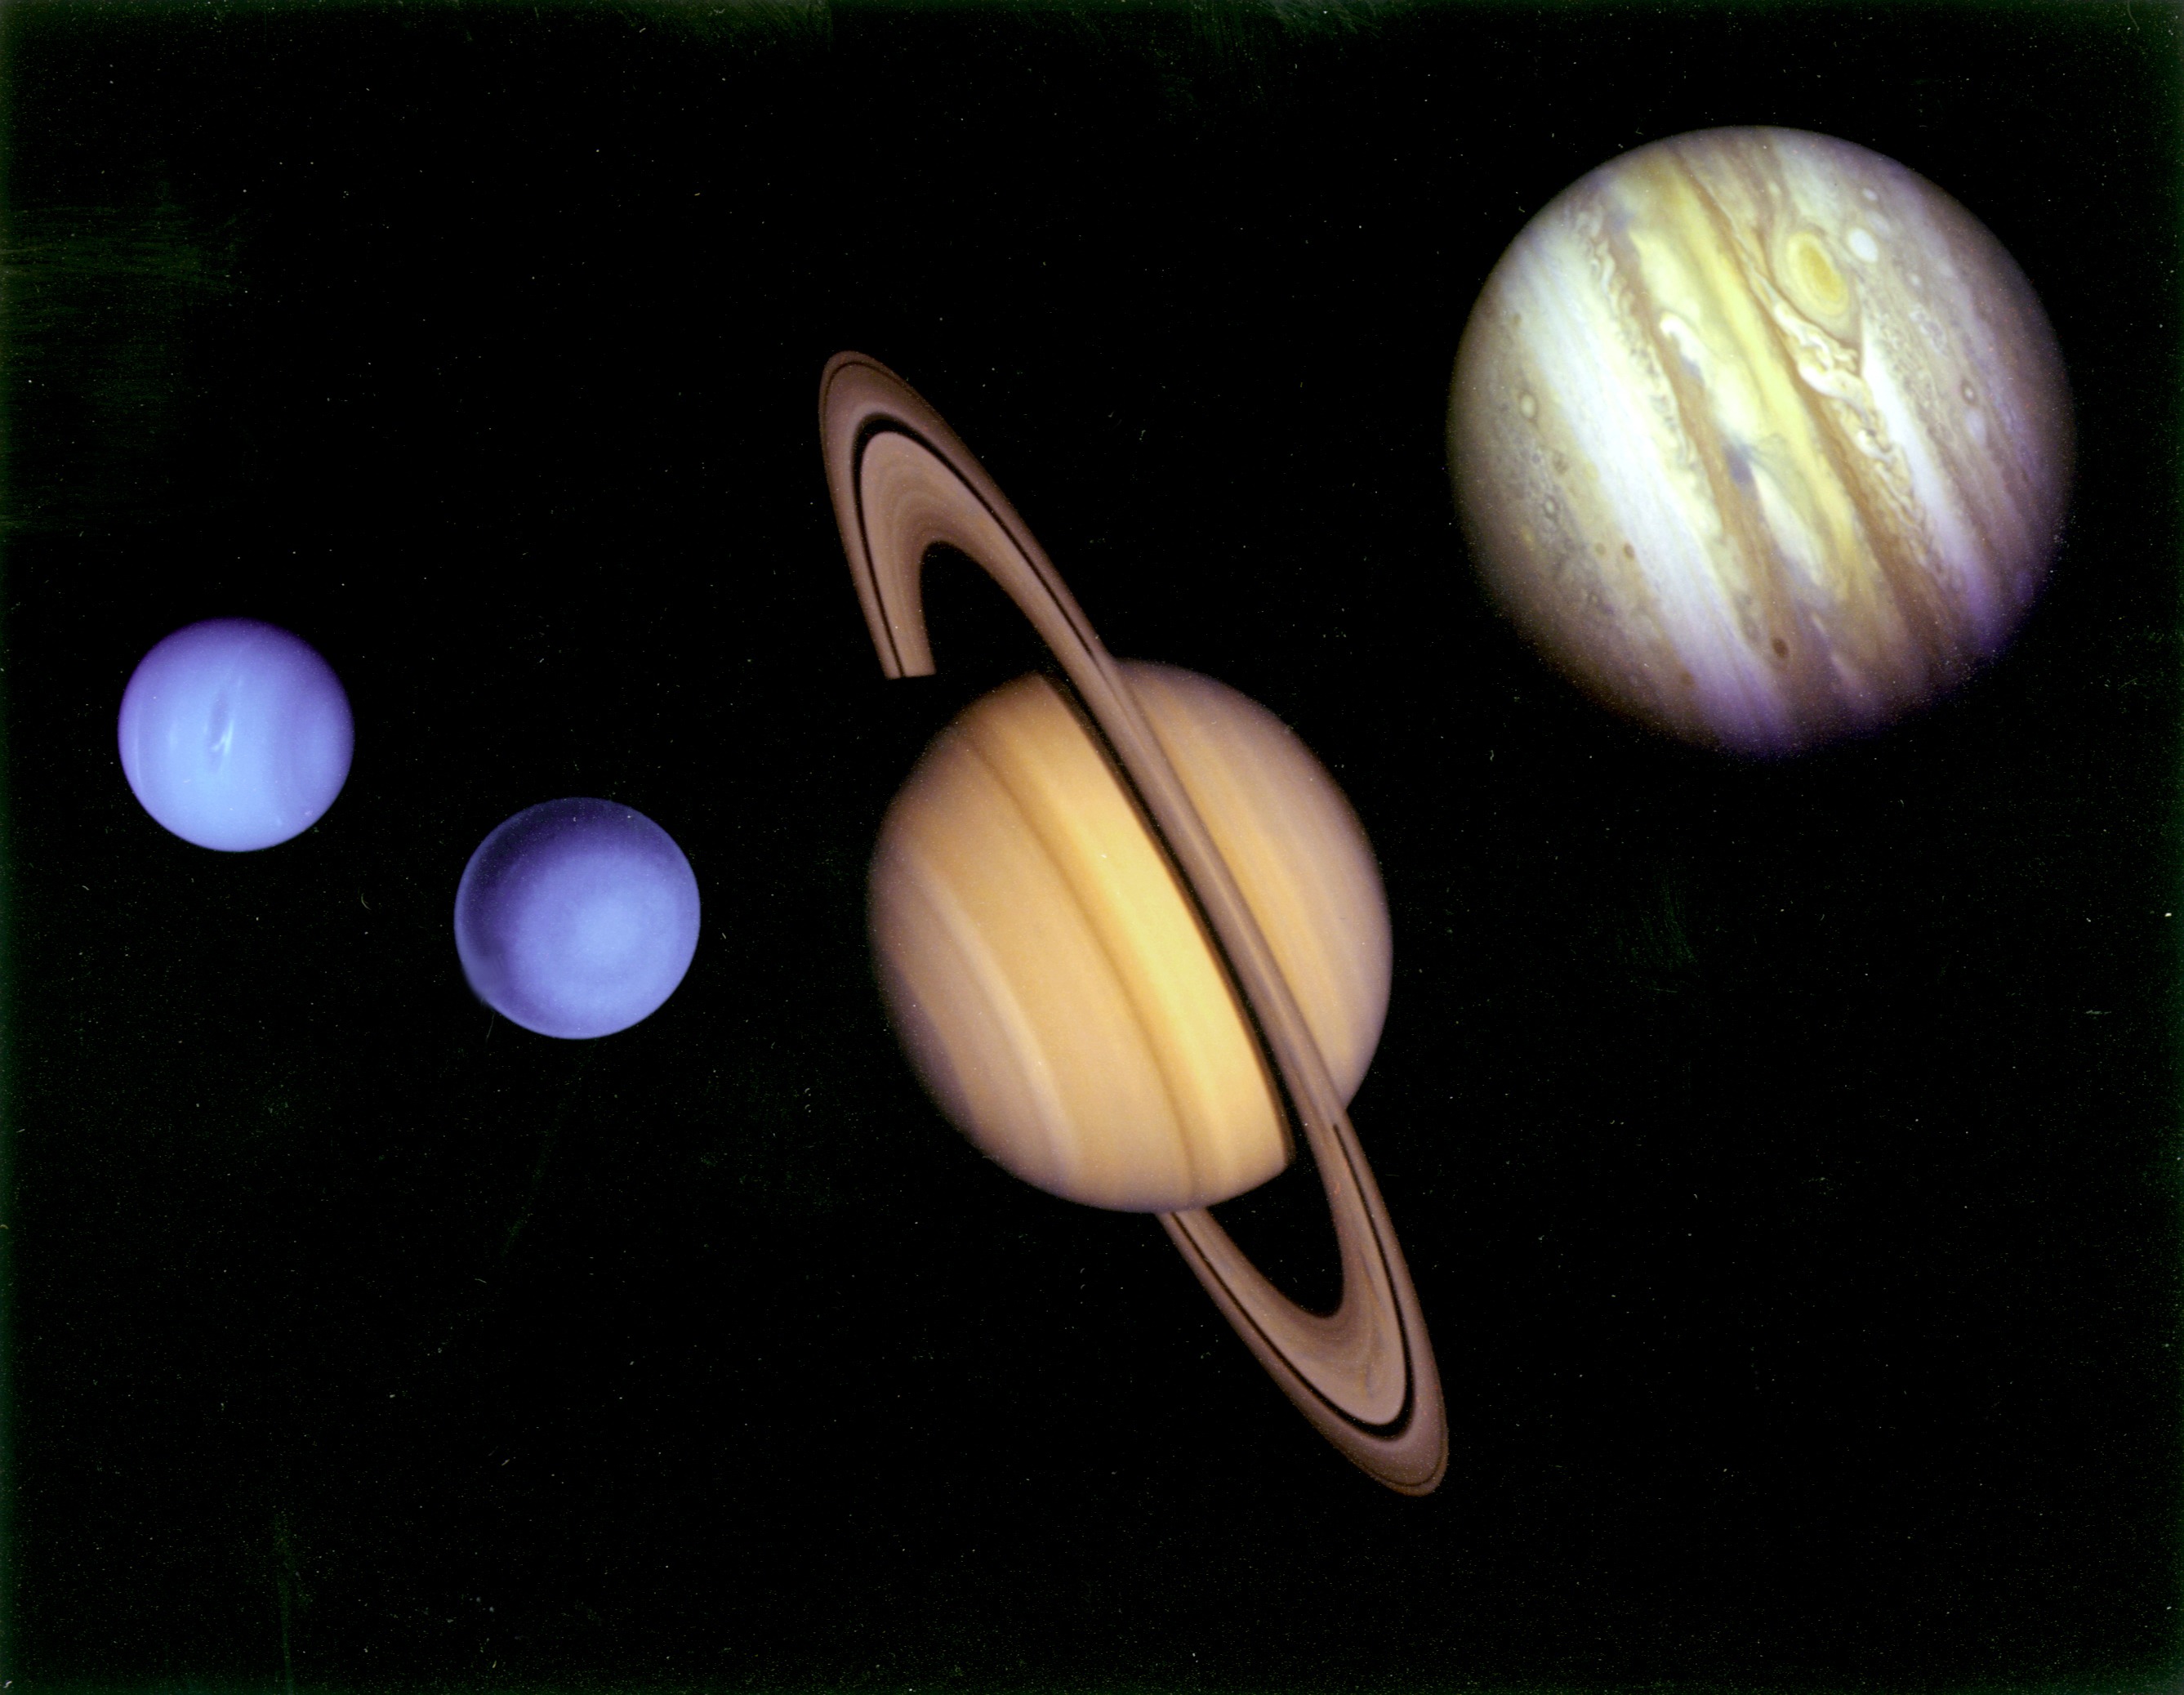 Самая большая система солнечной системы сатурн. Планеты Юпитер Сатурн Уран Нептун. Планеты гиганты Юпитер Сатурн Уран Нептун. Планеты гиганты Уран и Нептун. Газовые гиганты Сатурн Уран Нептун Юпитер.